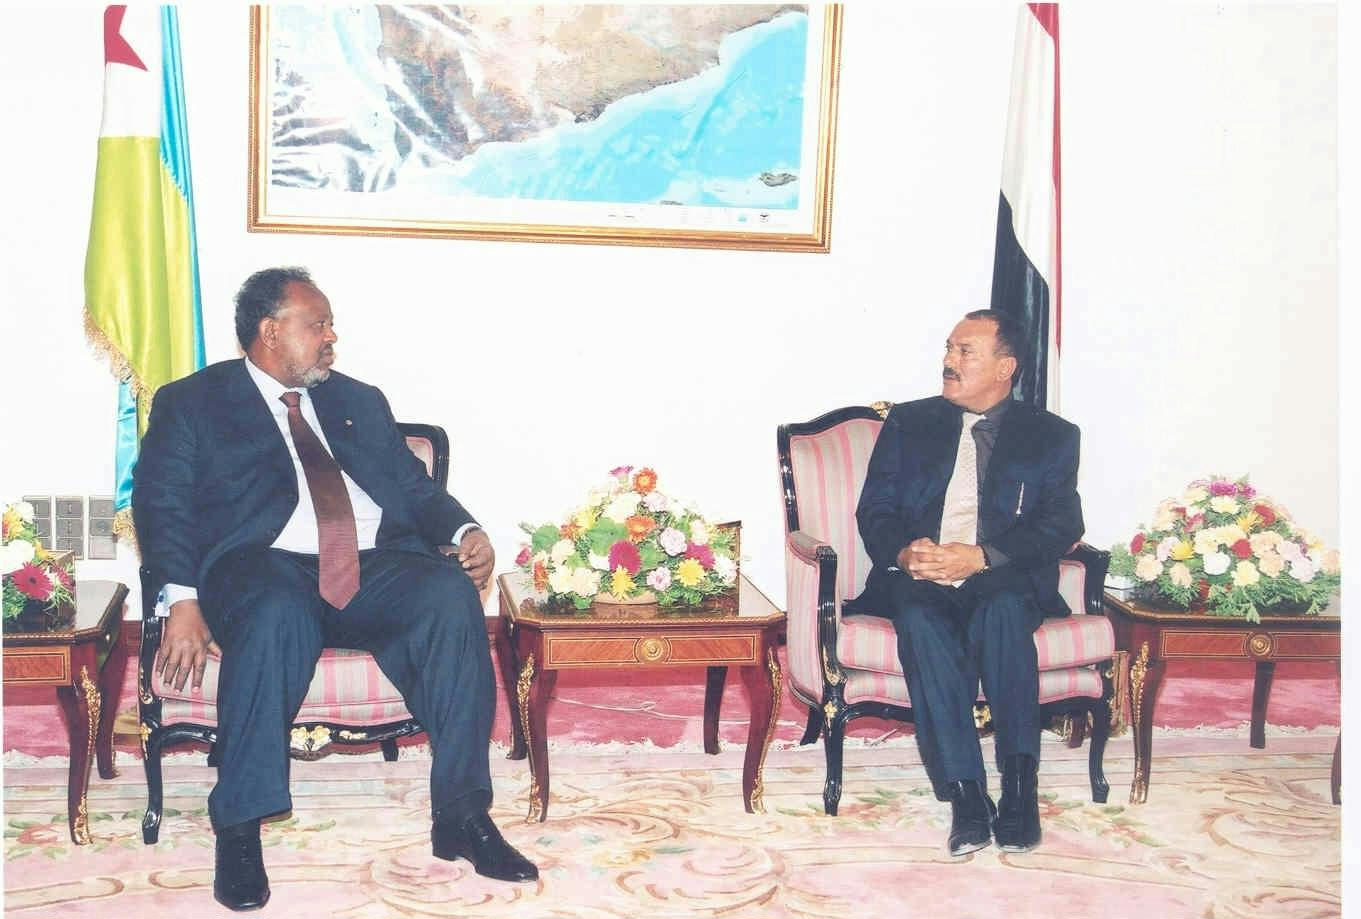 زيارة اسماعيل عمر جيله رئيس دولة جيبوتي 16-06-2003م